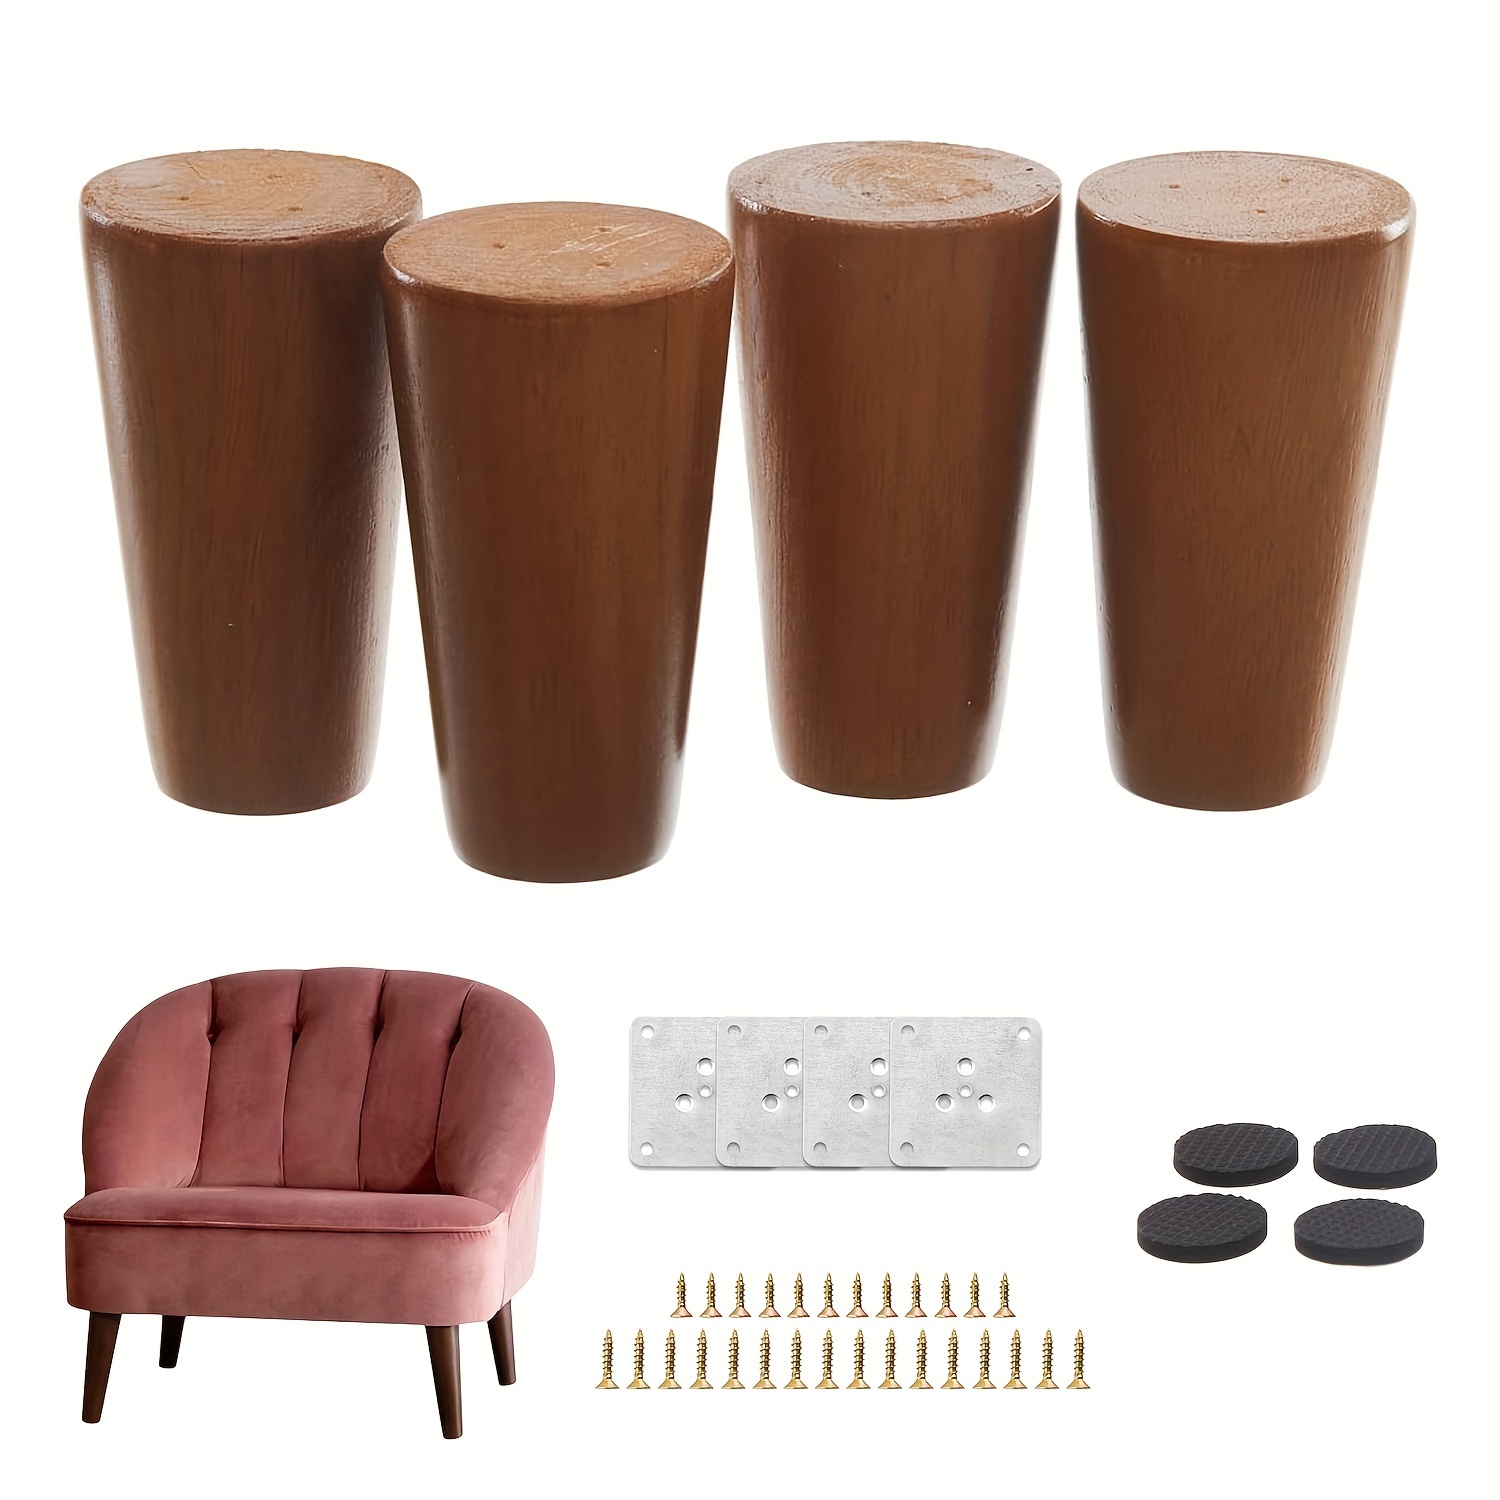 10.16cm/15.24cm Patas de muebles, juego de 4 piezas con placa de montaje,  pies de madera maciza de repuesto, utilizados para sofás, sillones, butacas